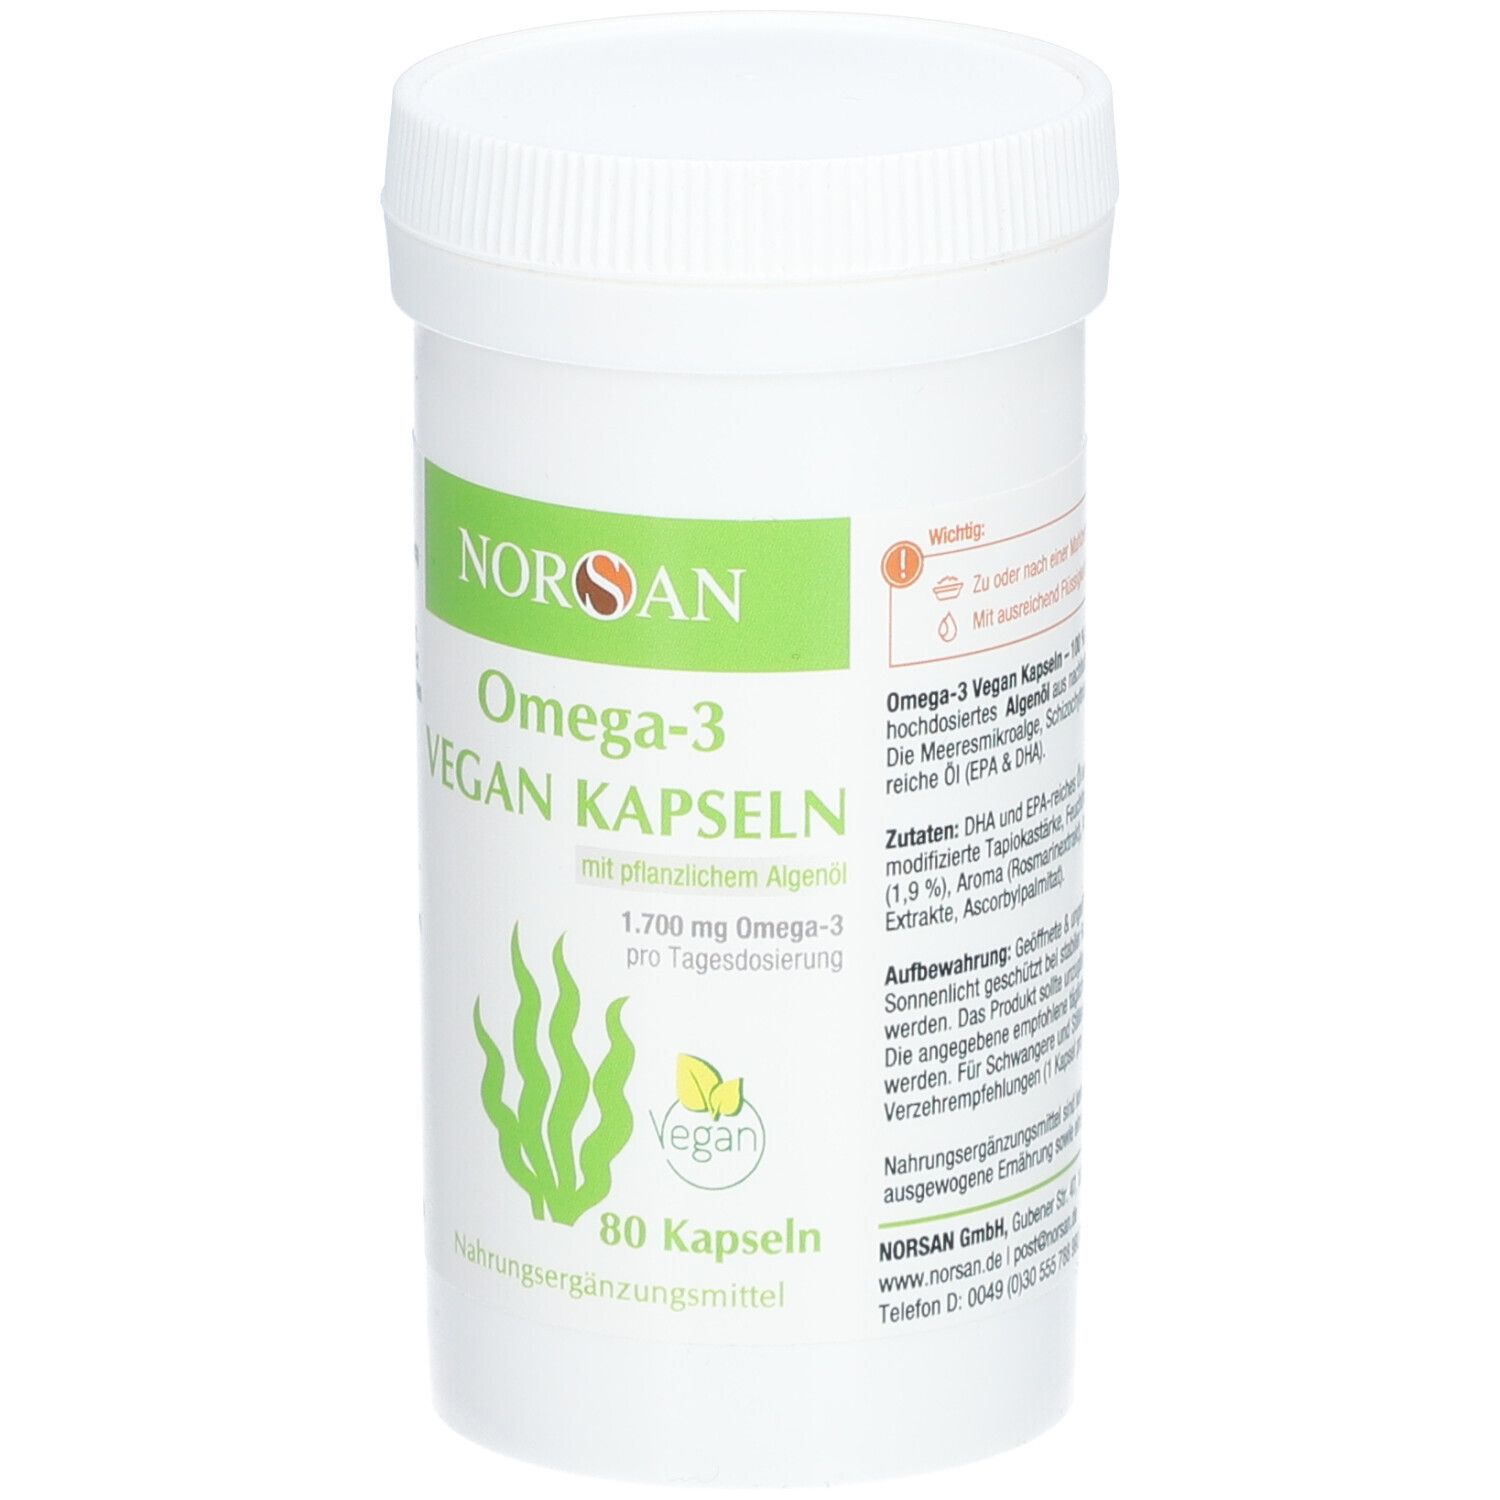 Norsan Omega-3 vegan Kapseln 80 St bei APONEO kaufen